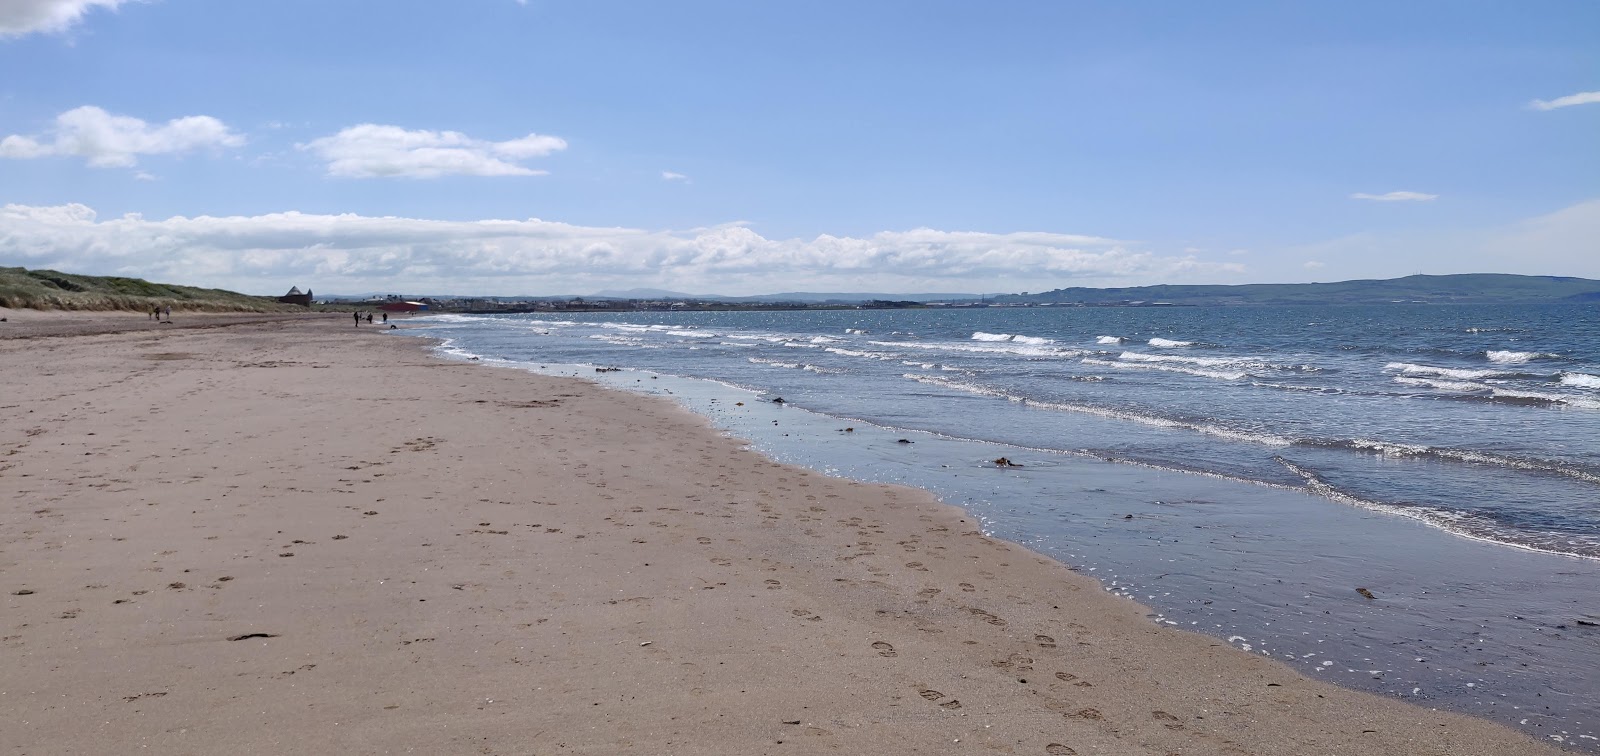 Foto de Playa de Prestwick con playa amplia